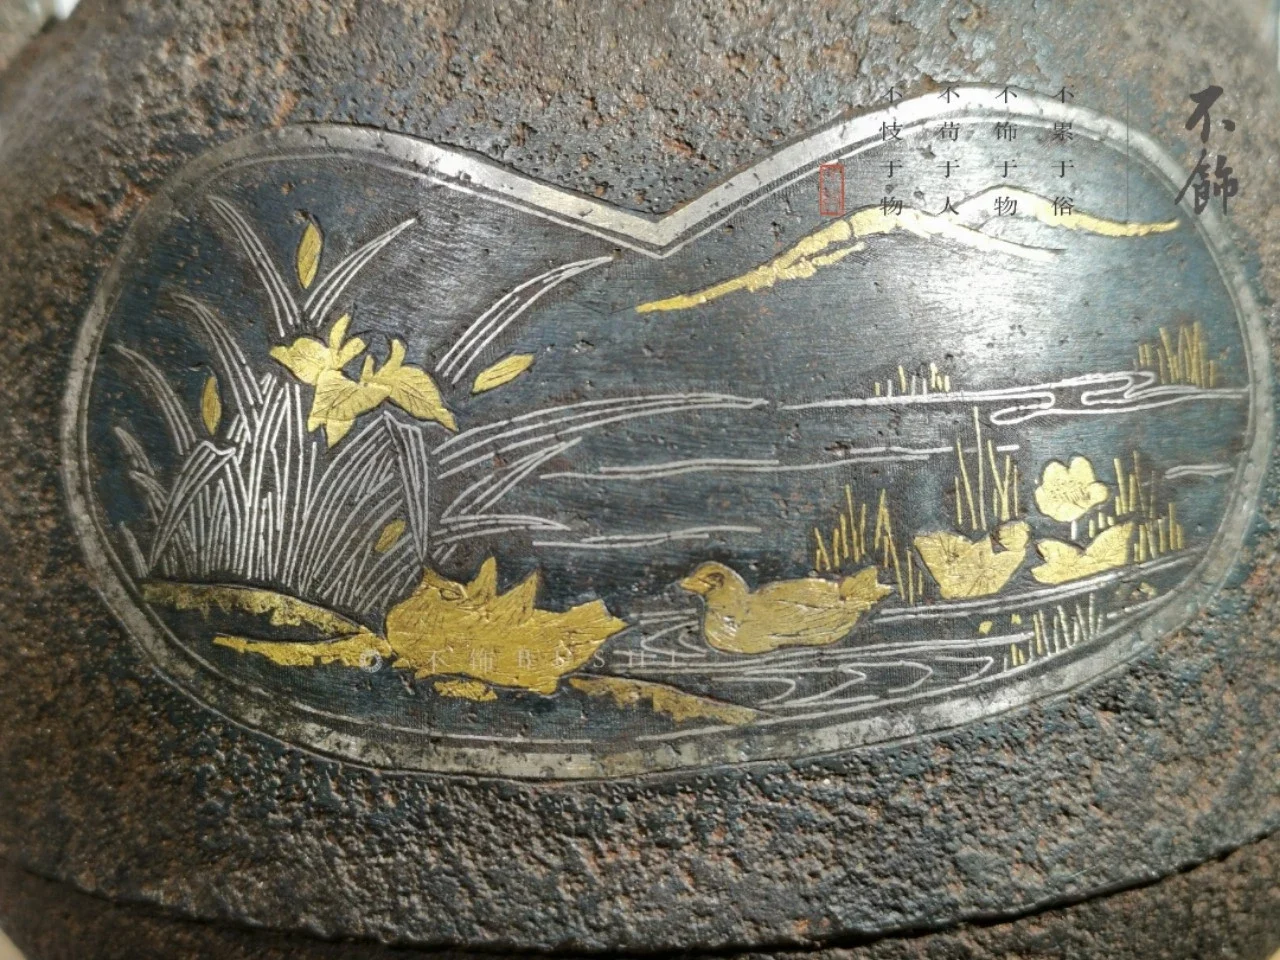 日本古美术|明治时代金寿堂堂主雨宫宗兵卫手作错金银铁瓶|铁壶